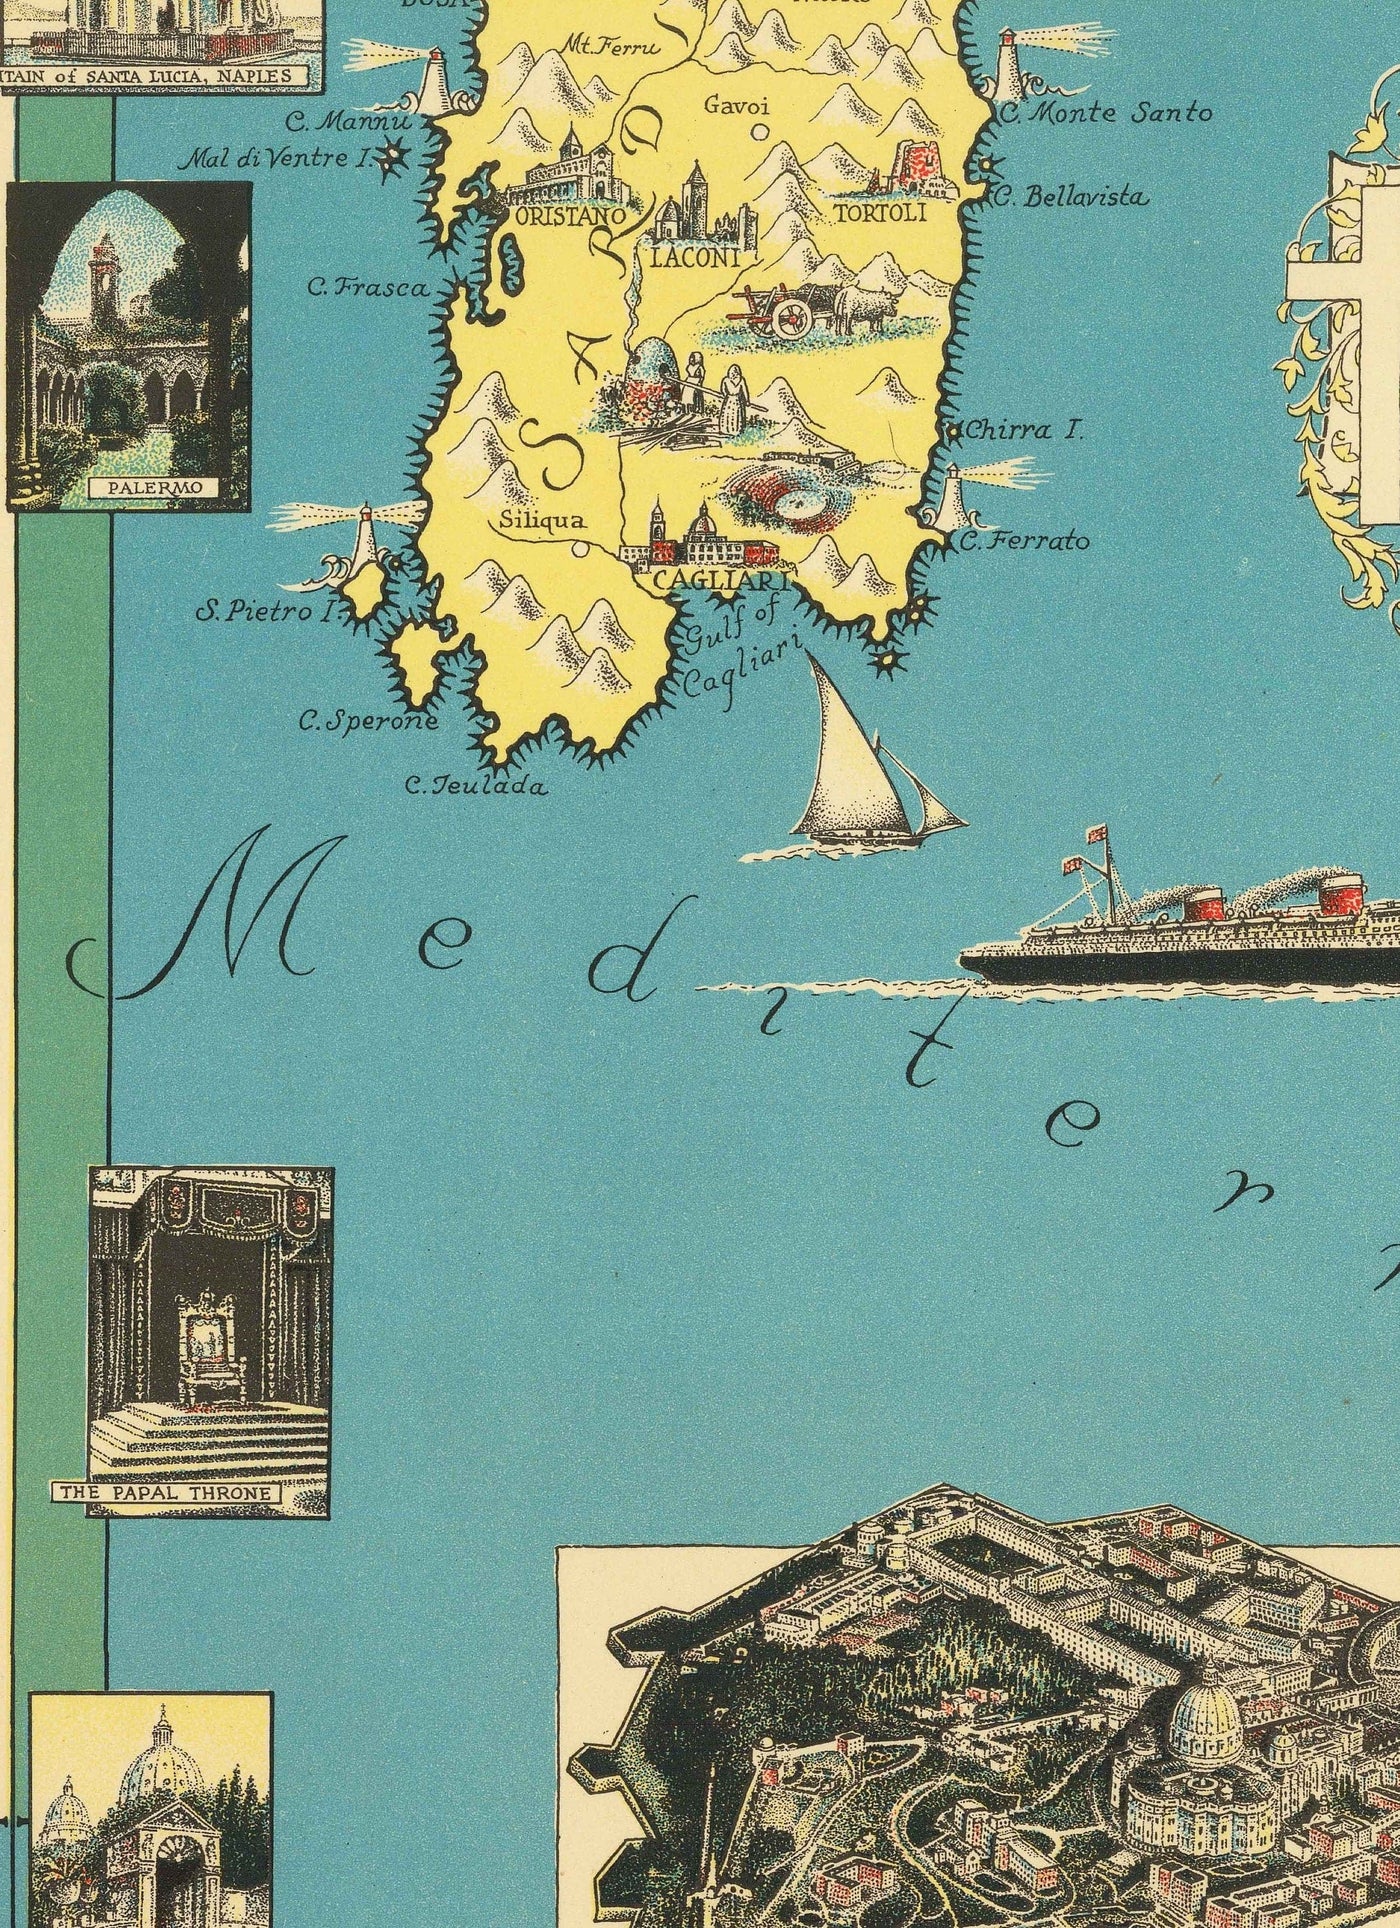 Old Pictorial Map of Italie, 1935 par E. Chase - Merons illustrés, Vatican, Venise, Florence, Rome, Sardaigne